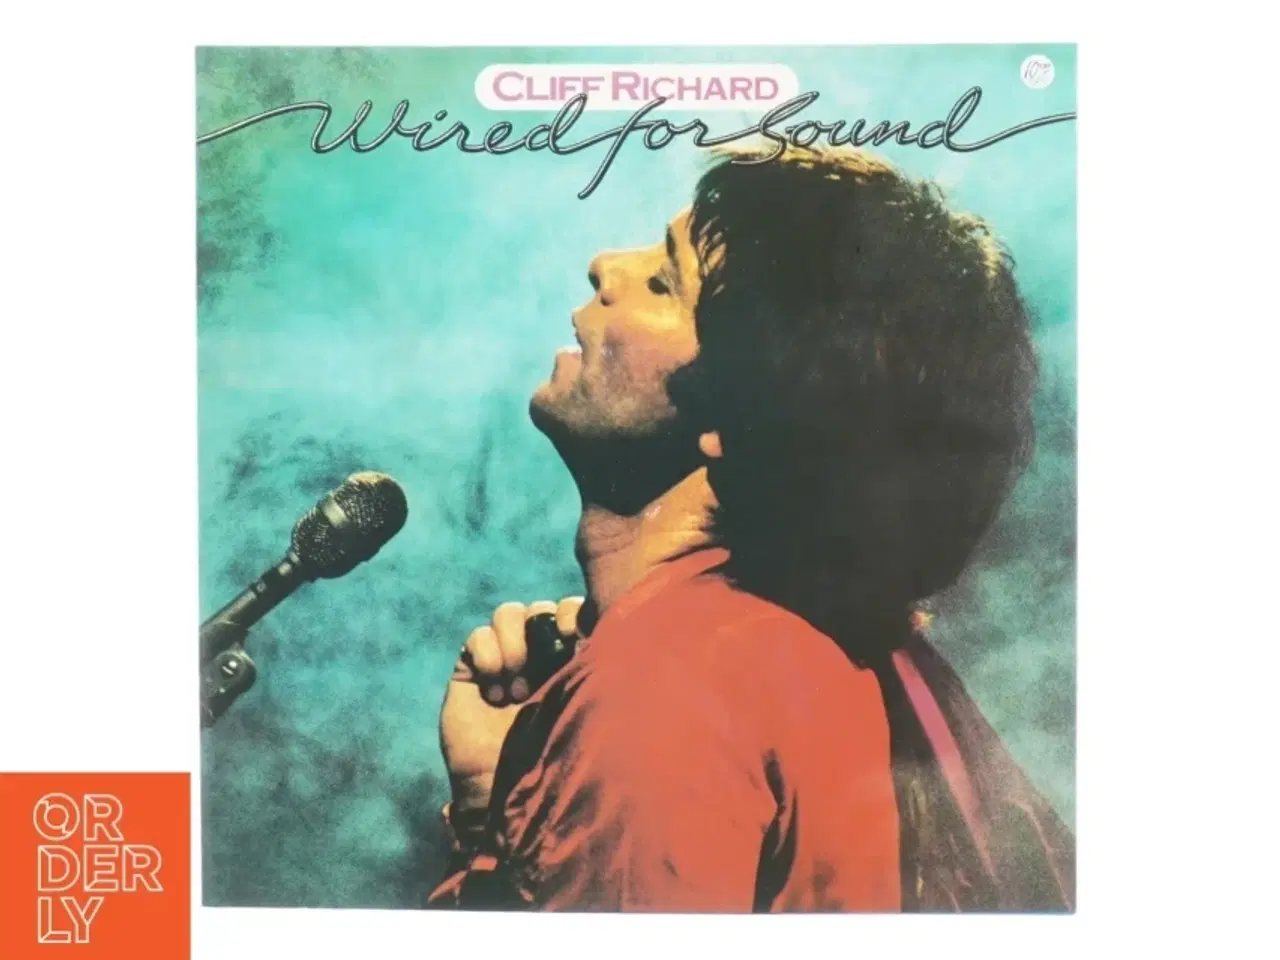 Billede 1 - Cliff Richard, Wired for sound fra Emi (str. 30 cm)